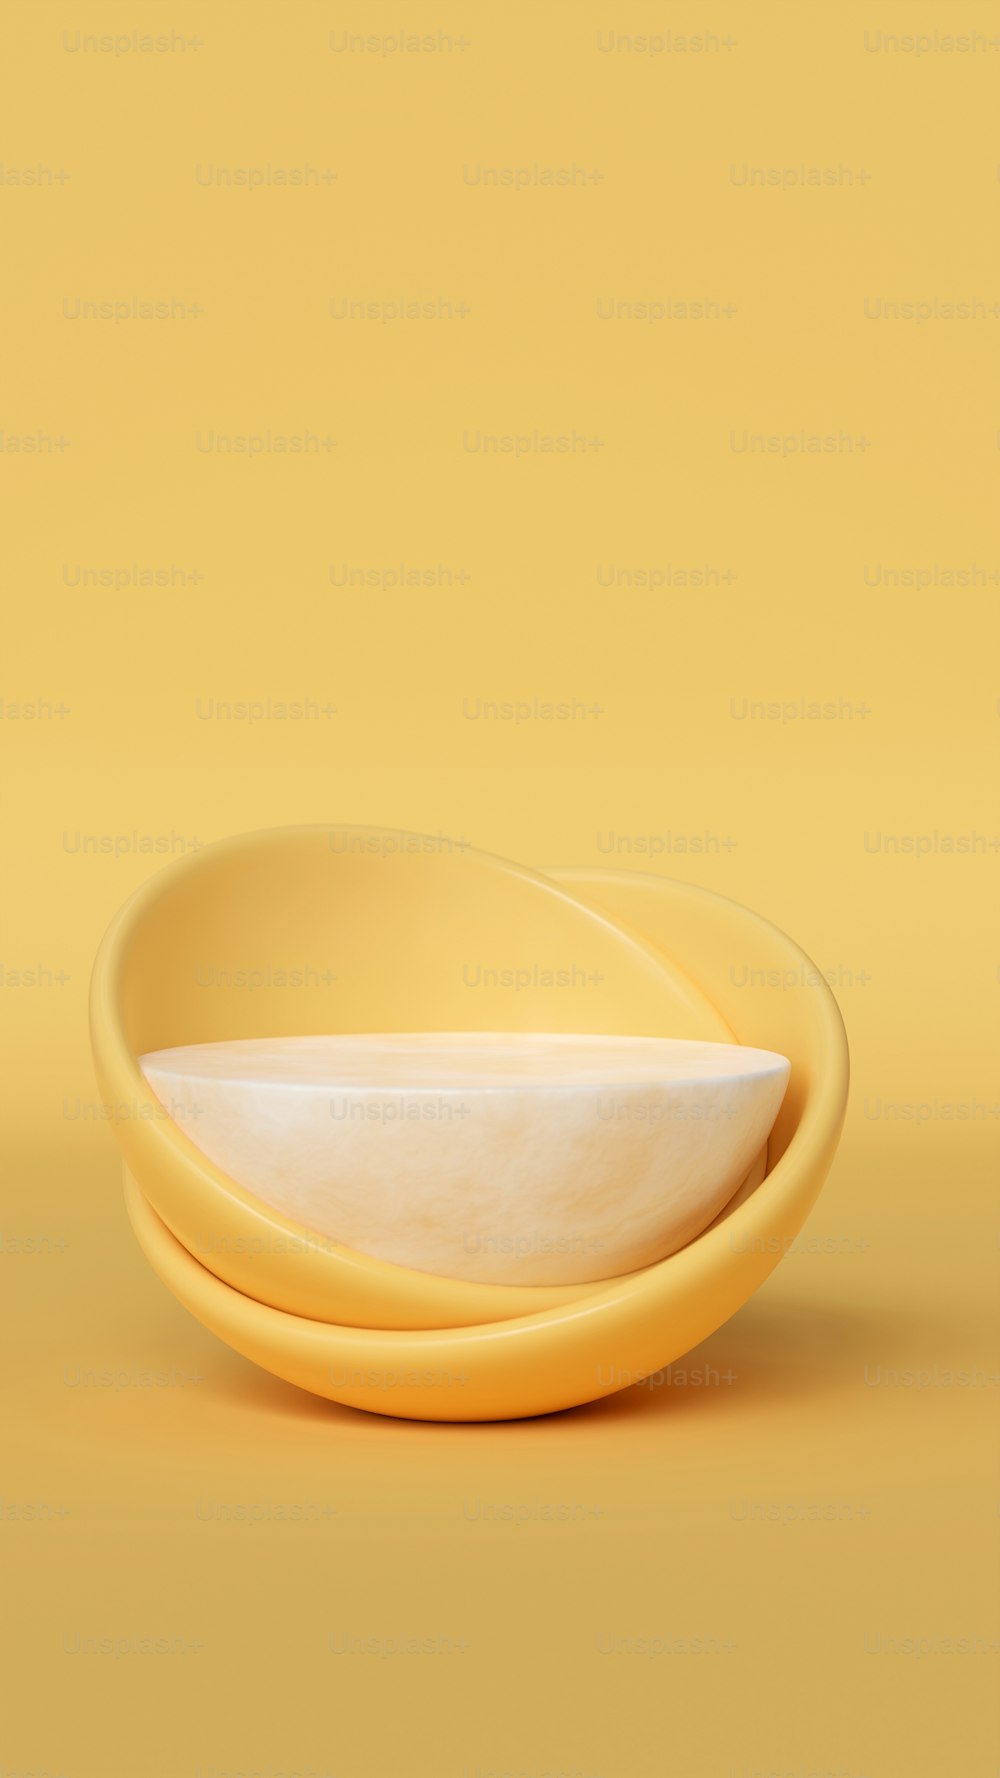 그 위에 흰색 그릇이 있는 노란색 접시